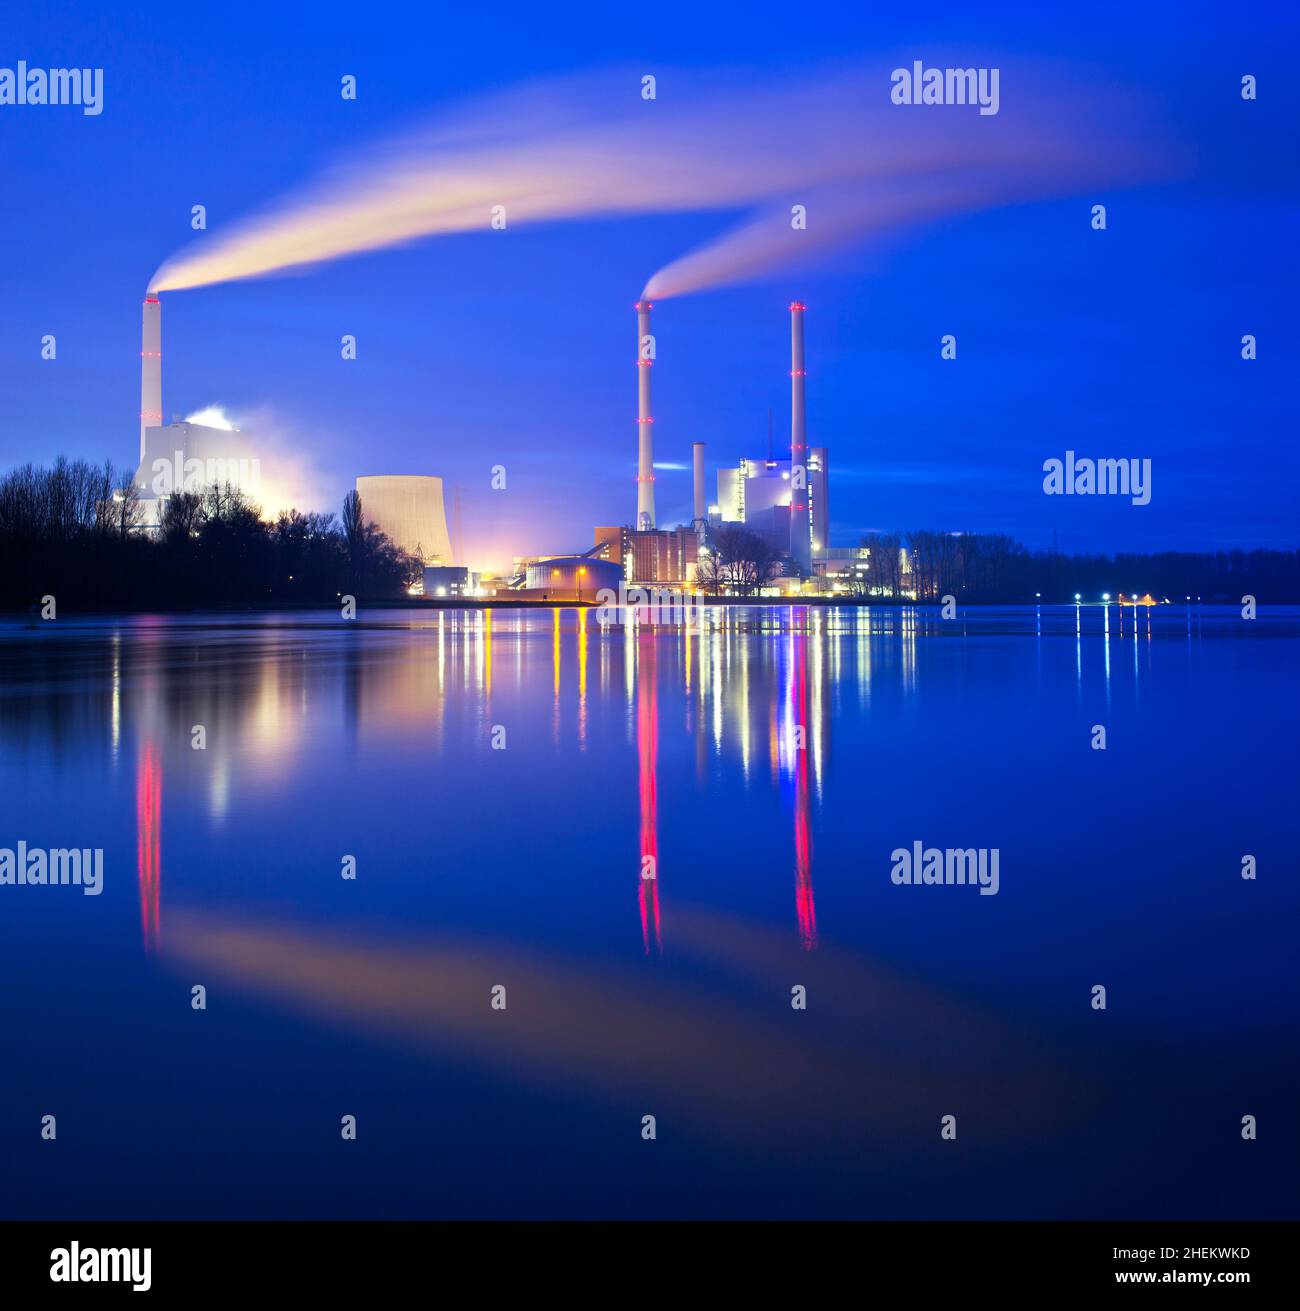 Illuminated coal power plant in Germany Stock Photo